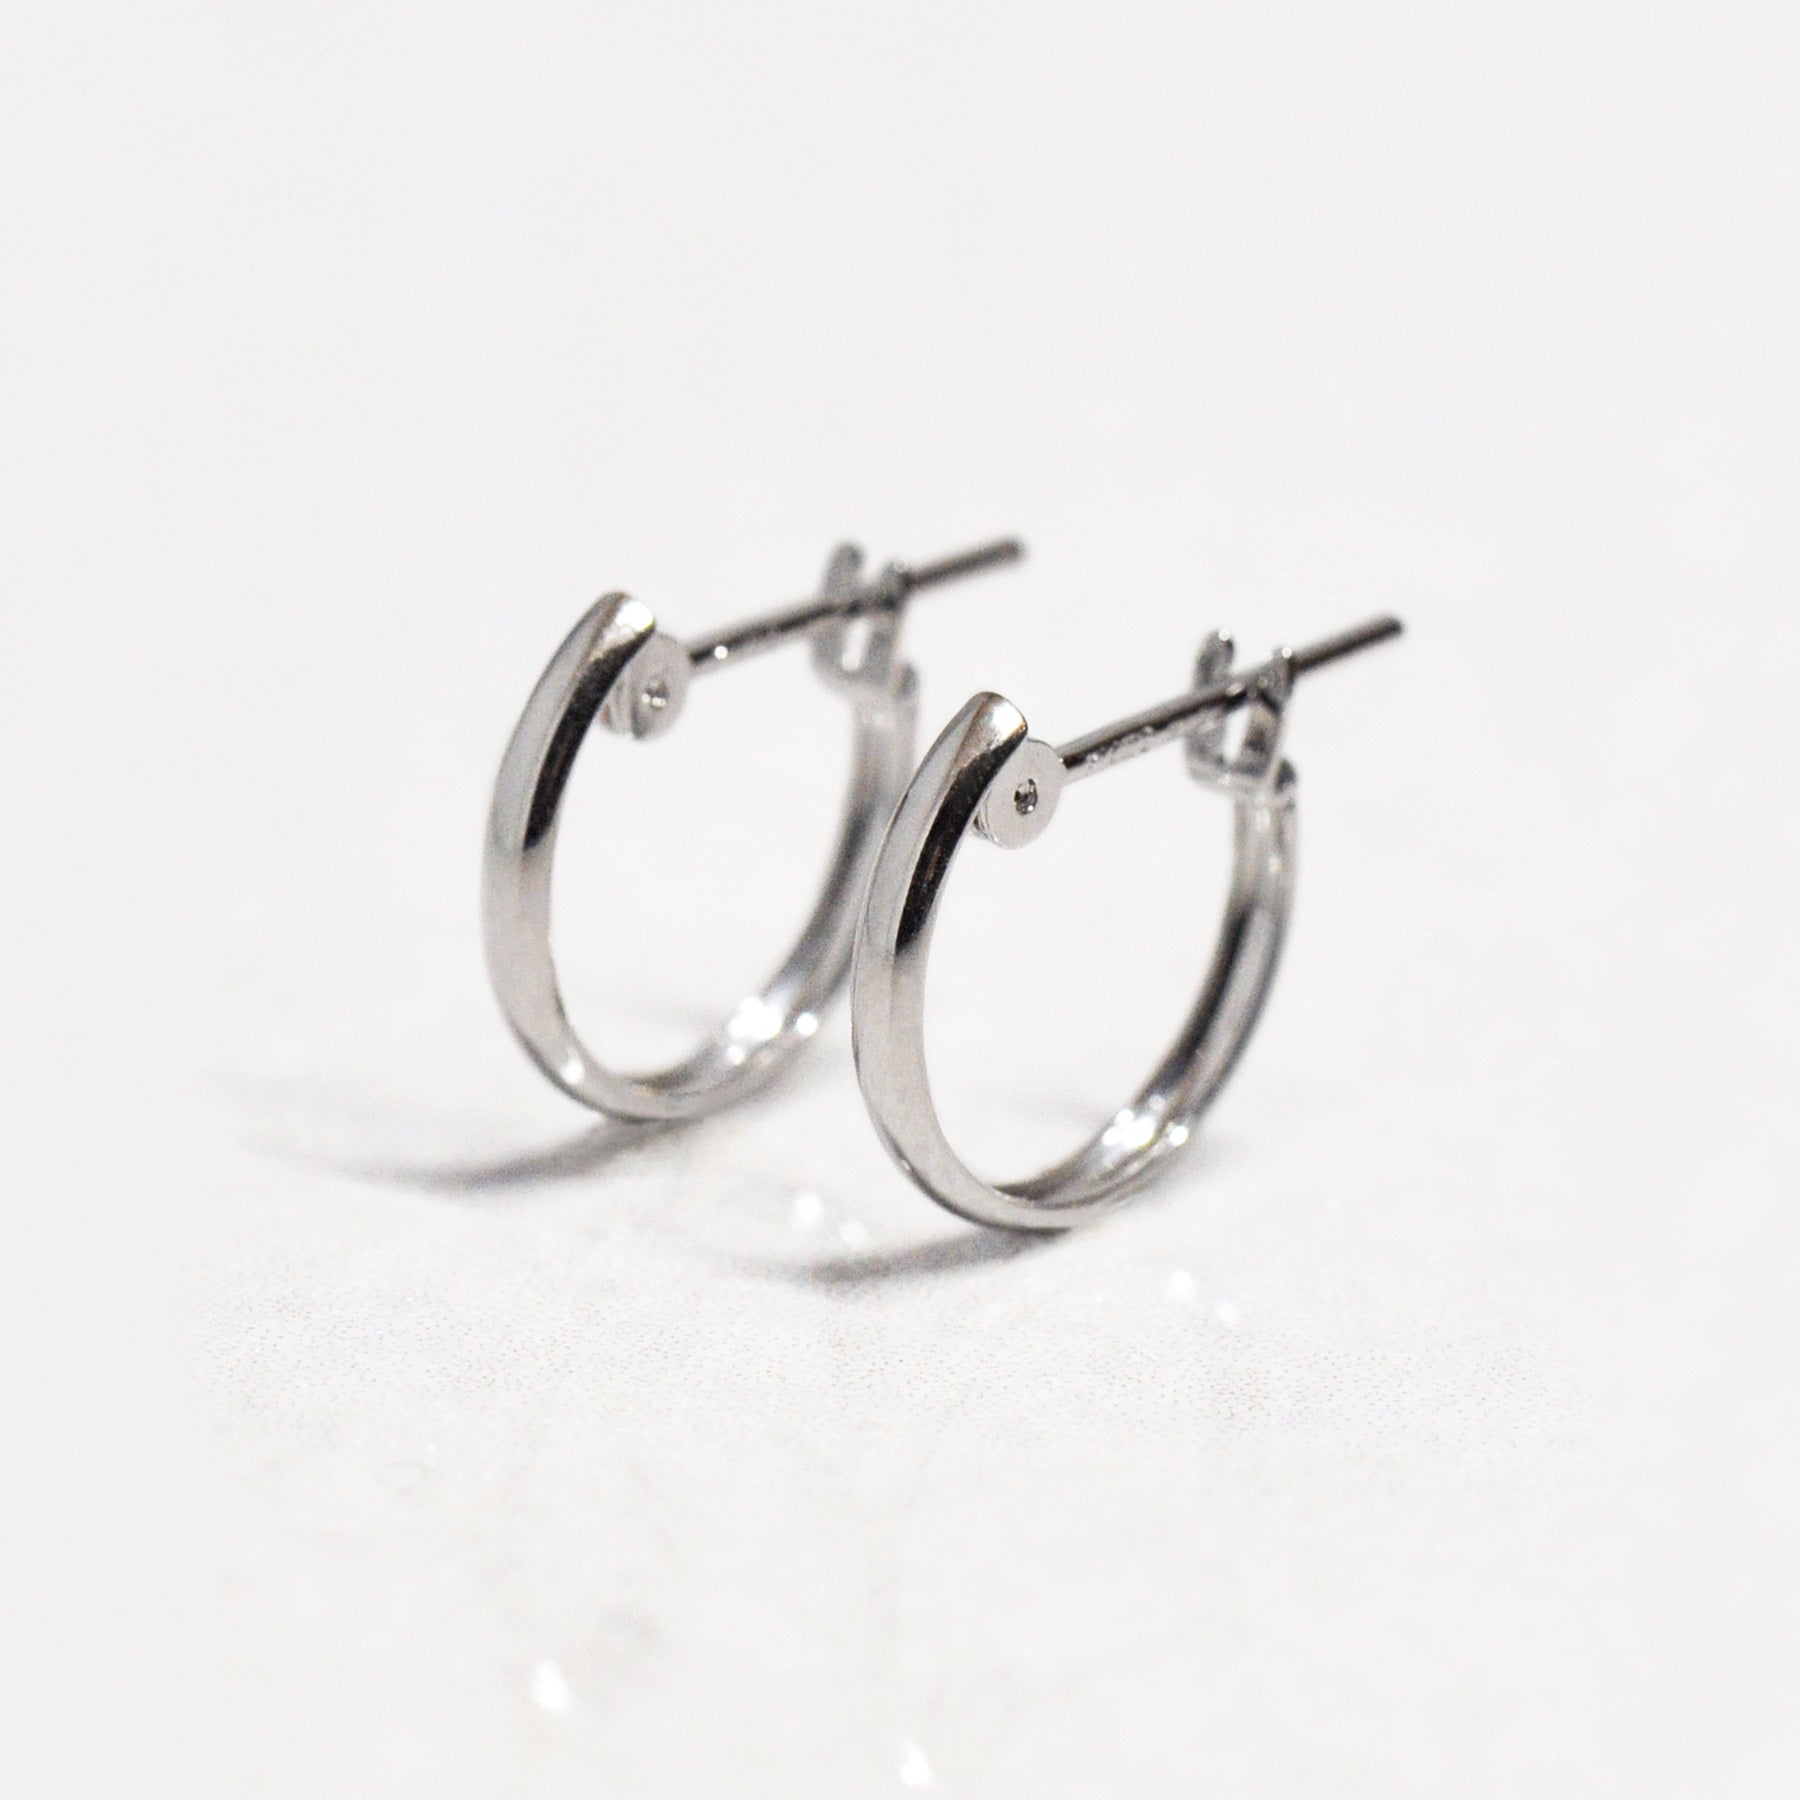 14K/10K White Gold Mini Hoop Earrings - Product Image